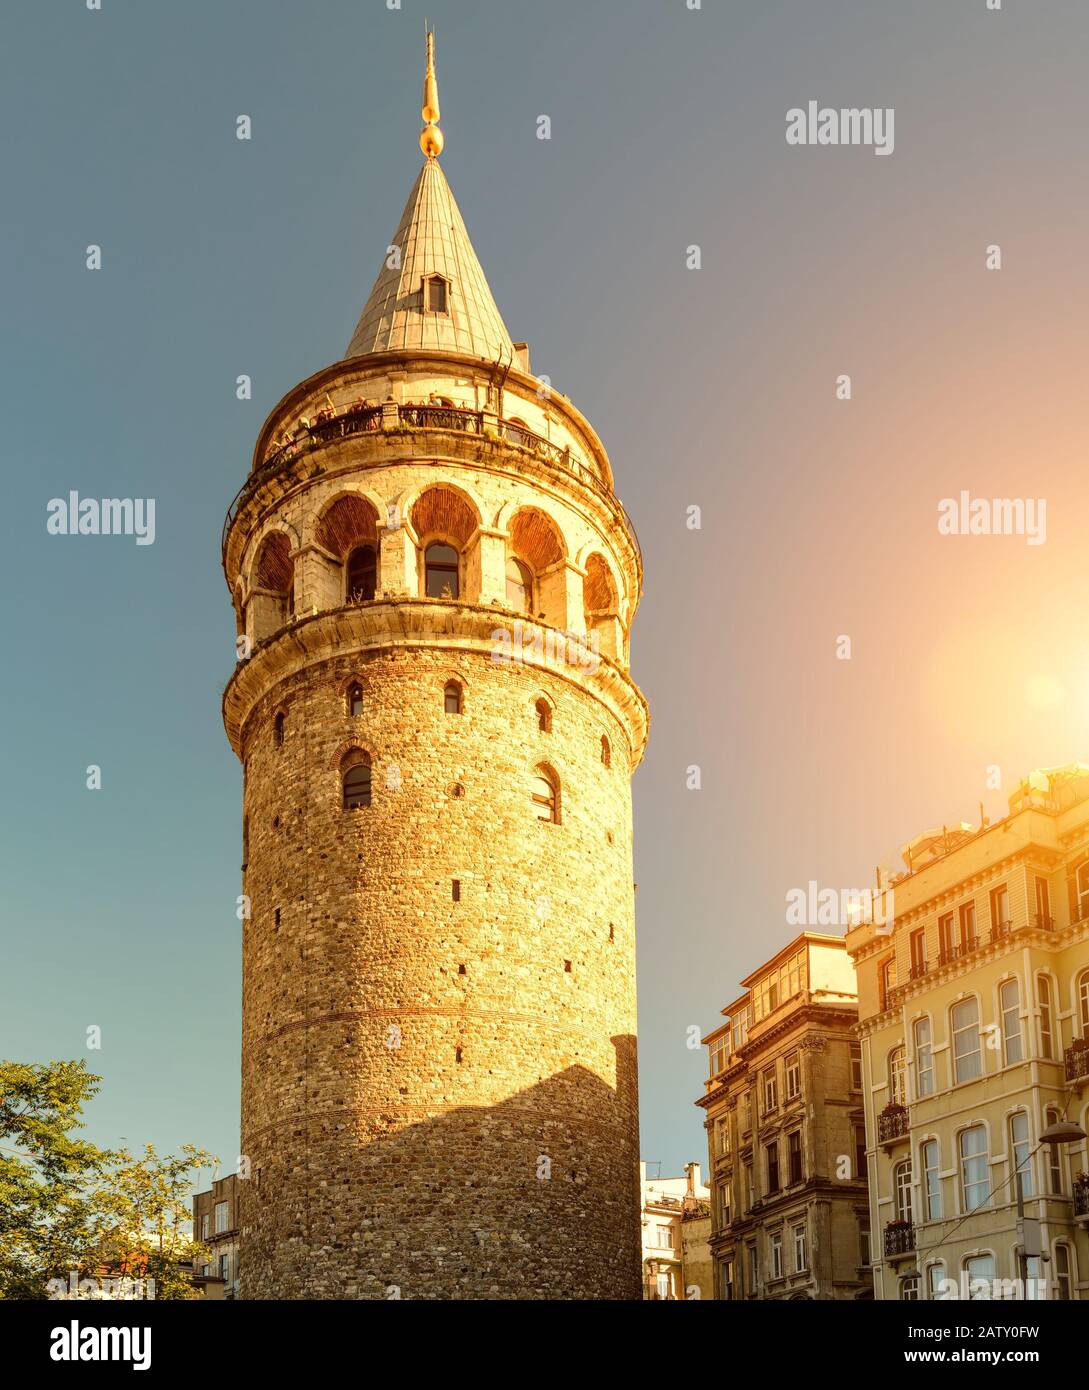 Galata-Turm im Sonnenlicht, Istanbul, Türkei. Uralter Turm im Galata-Viertel von Istanbul. Sonniger Blick auf das Wahrzeichen von Istanbul im Sommer. Altes Archi Stockfoto